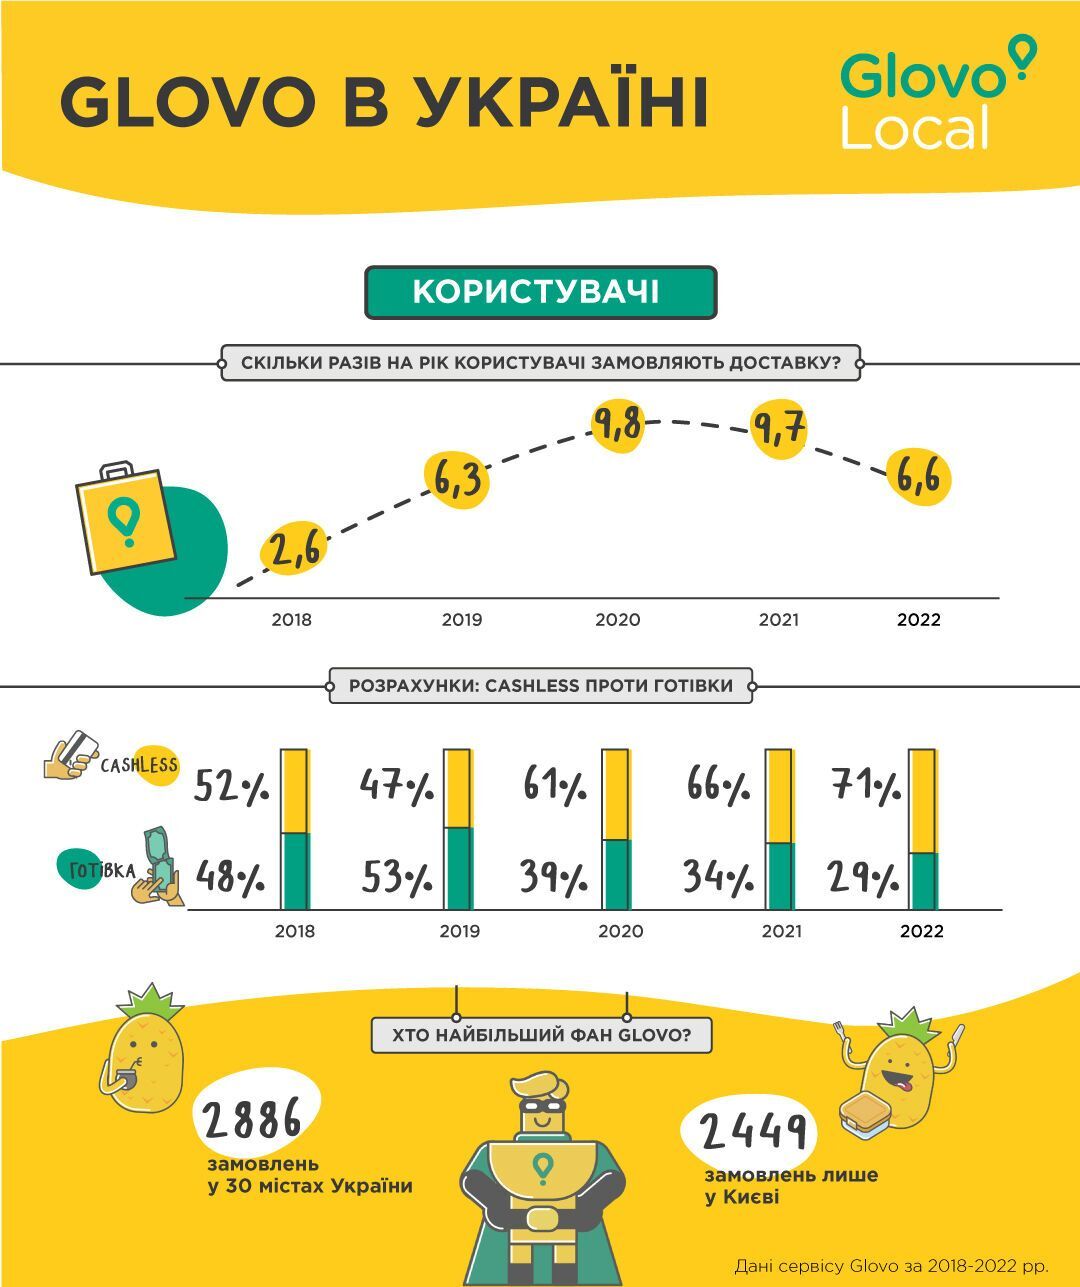 Як підприємцям збільшити дохід в умовах війни: Glovo запустили програму підтримки малого і середнього бізнесу в Україні